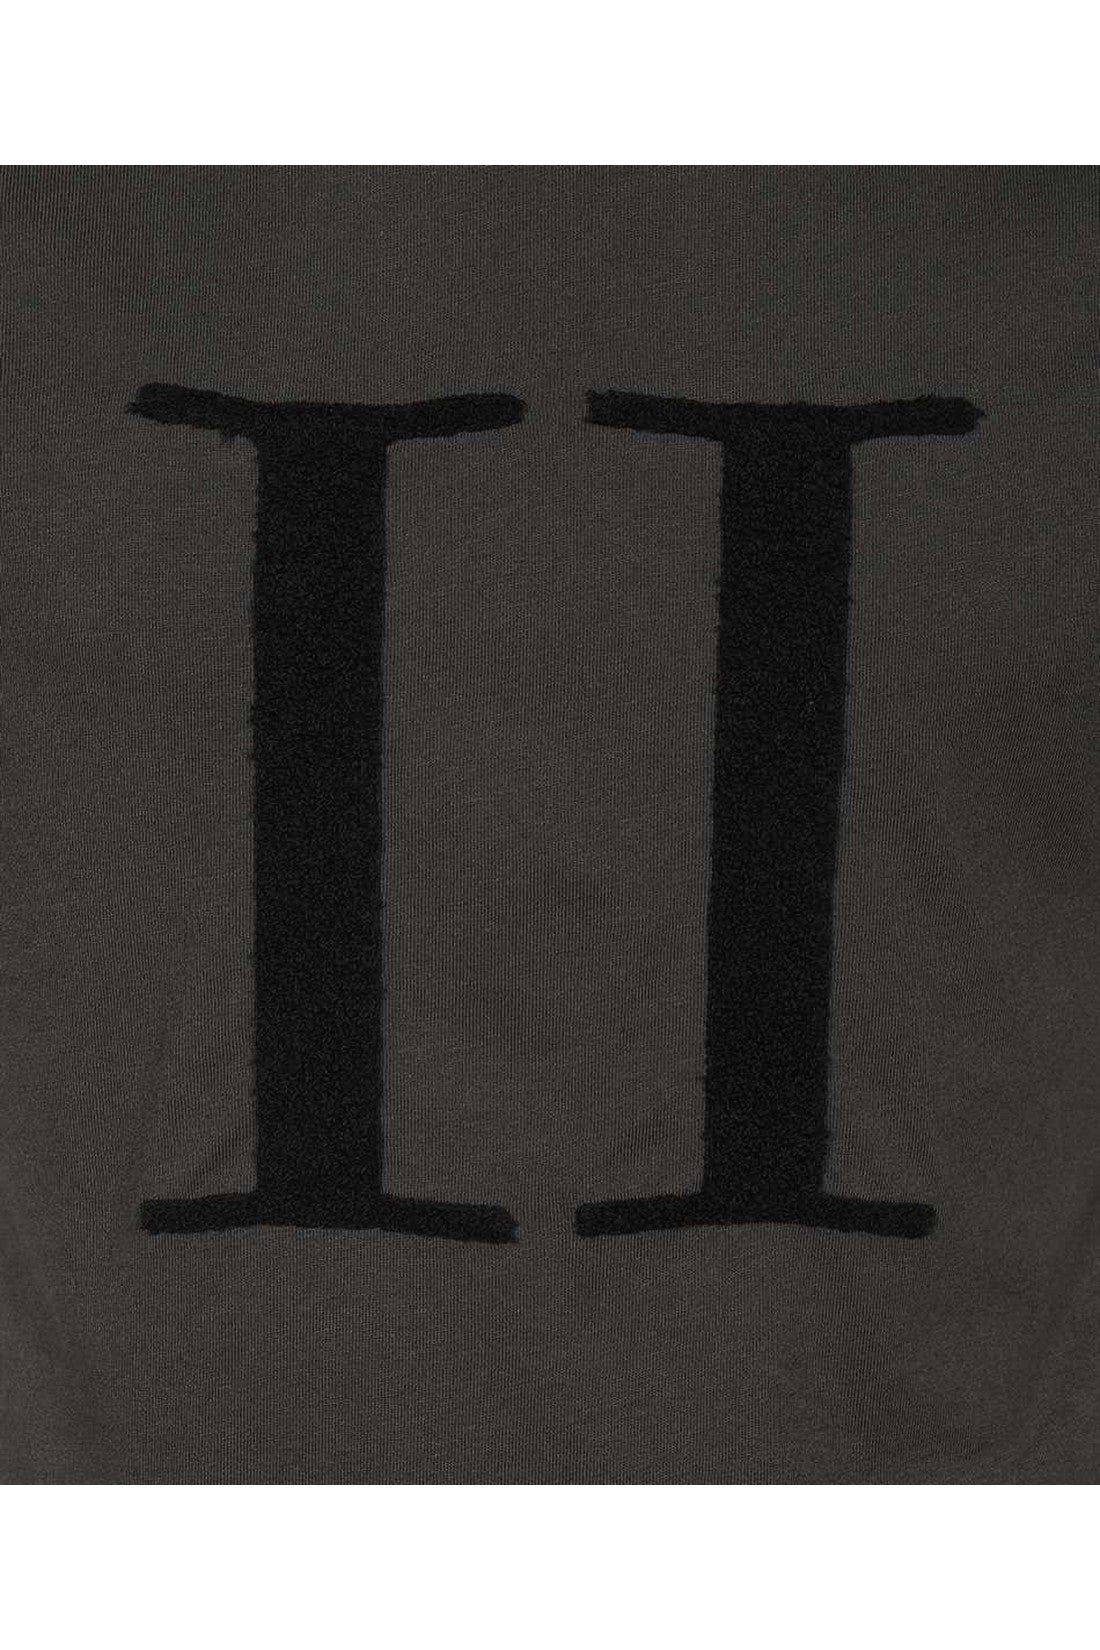 Logo print t-shirt-Les Deux-OUTLET-SALE-ARCHIVIST